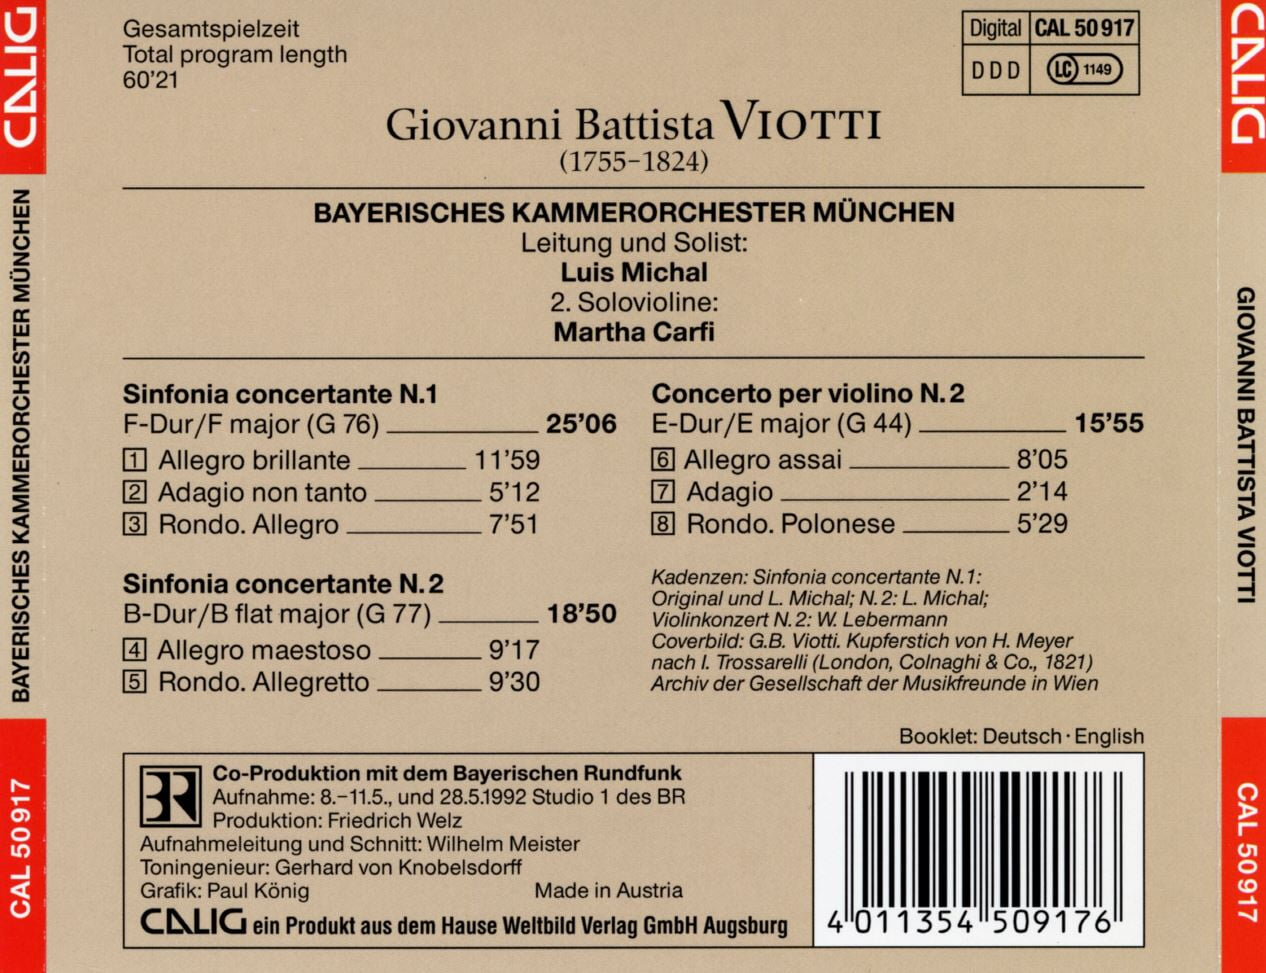 Bayerisches Kammerorchester Munchen - Viotti Sinfonie concertanti N. 1 & 2 [오스트리아발매]